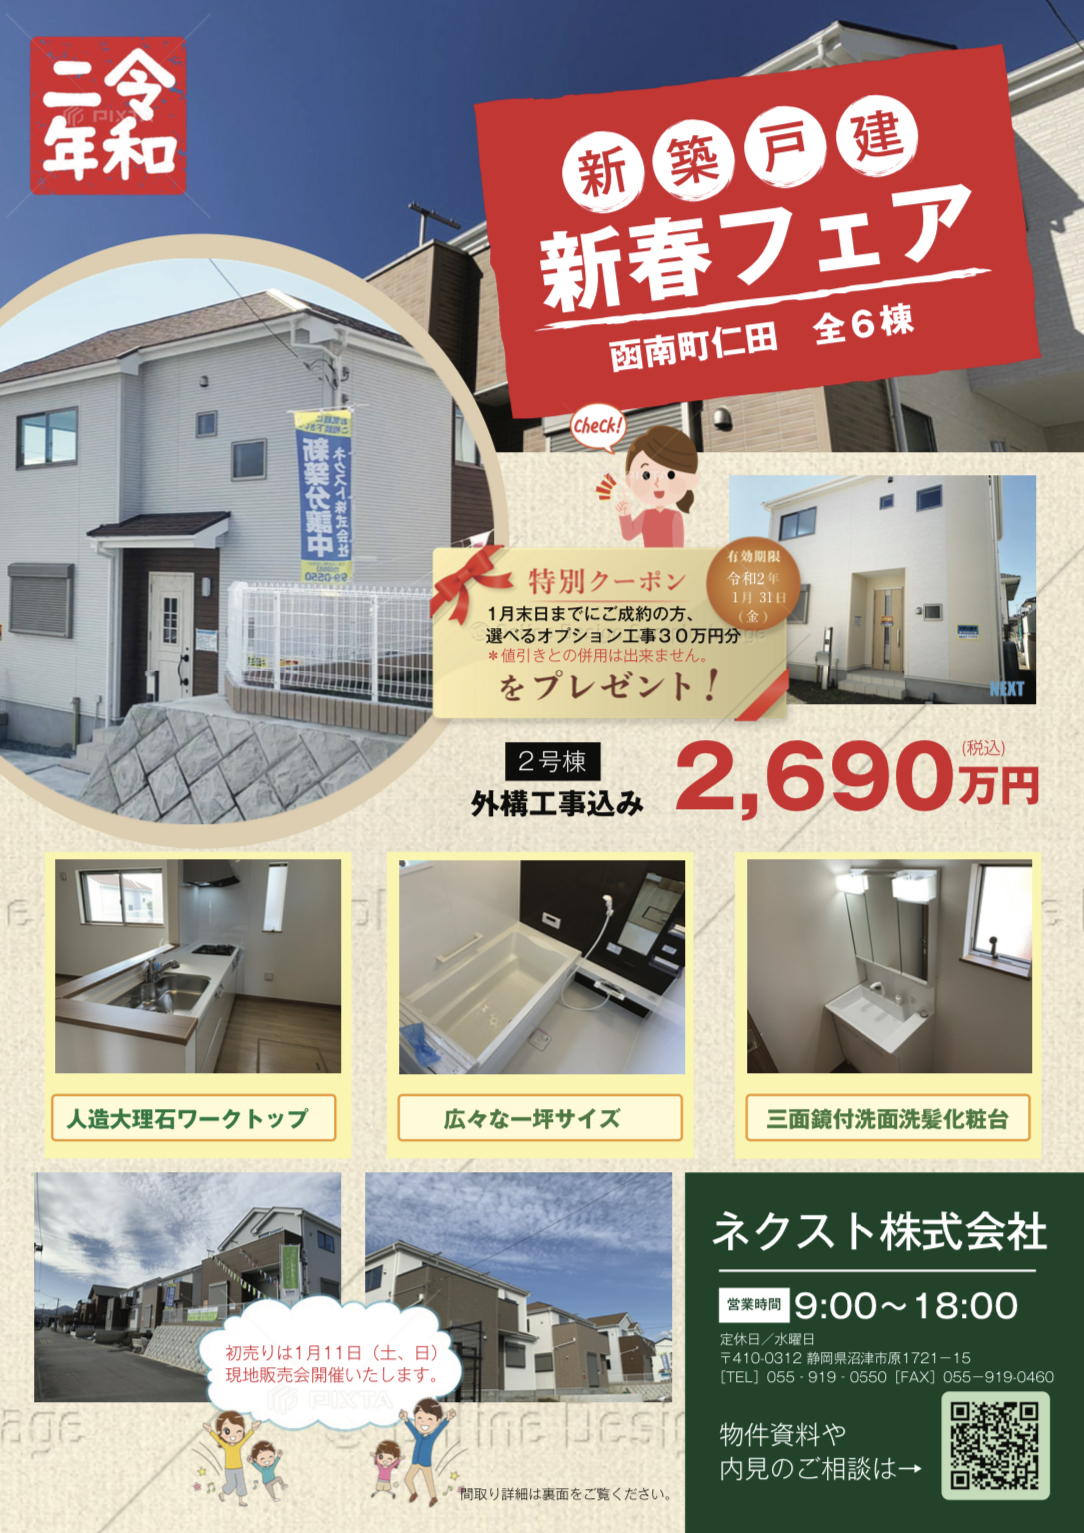 仁田広告2020